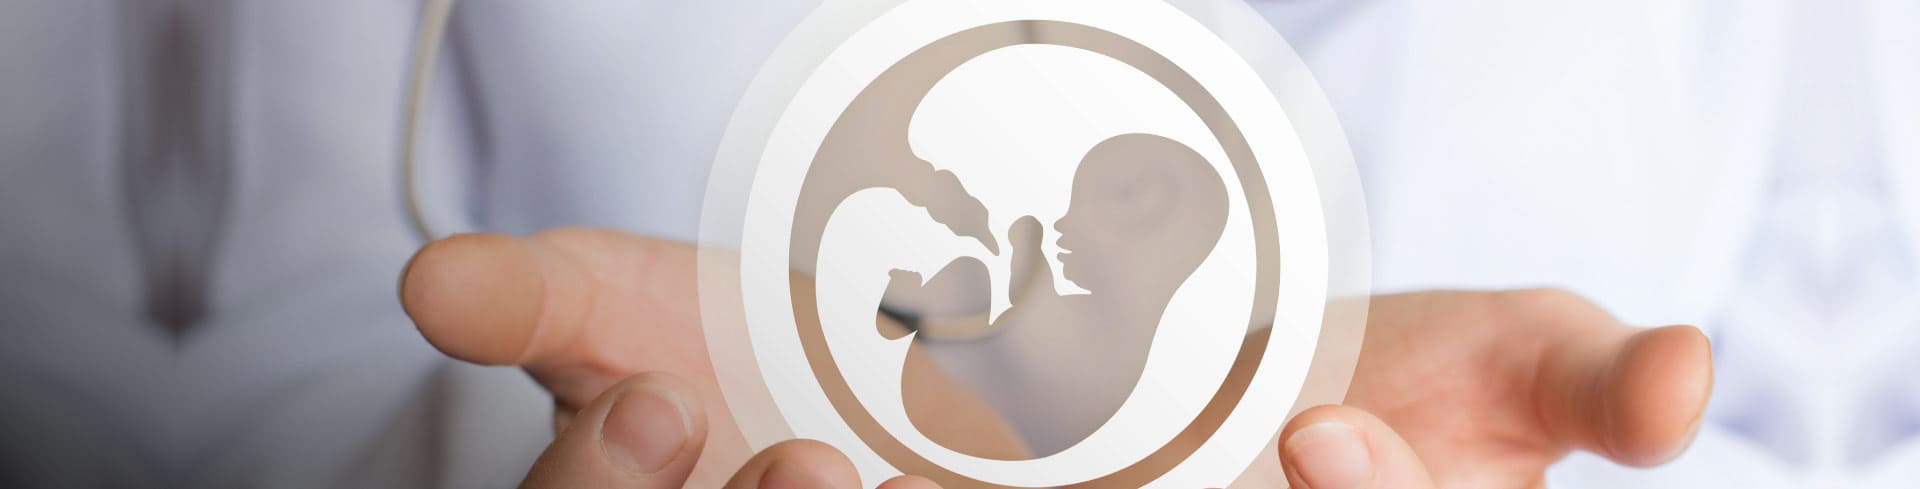 Infertilidad: descubre las causas y encuentra soluciones